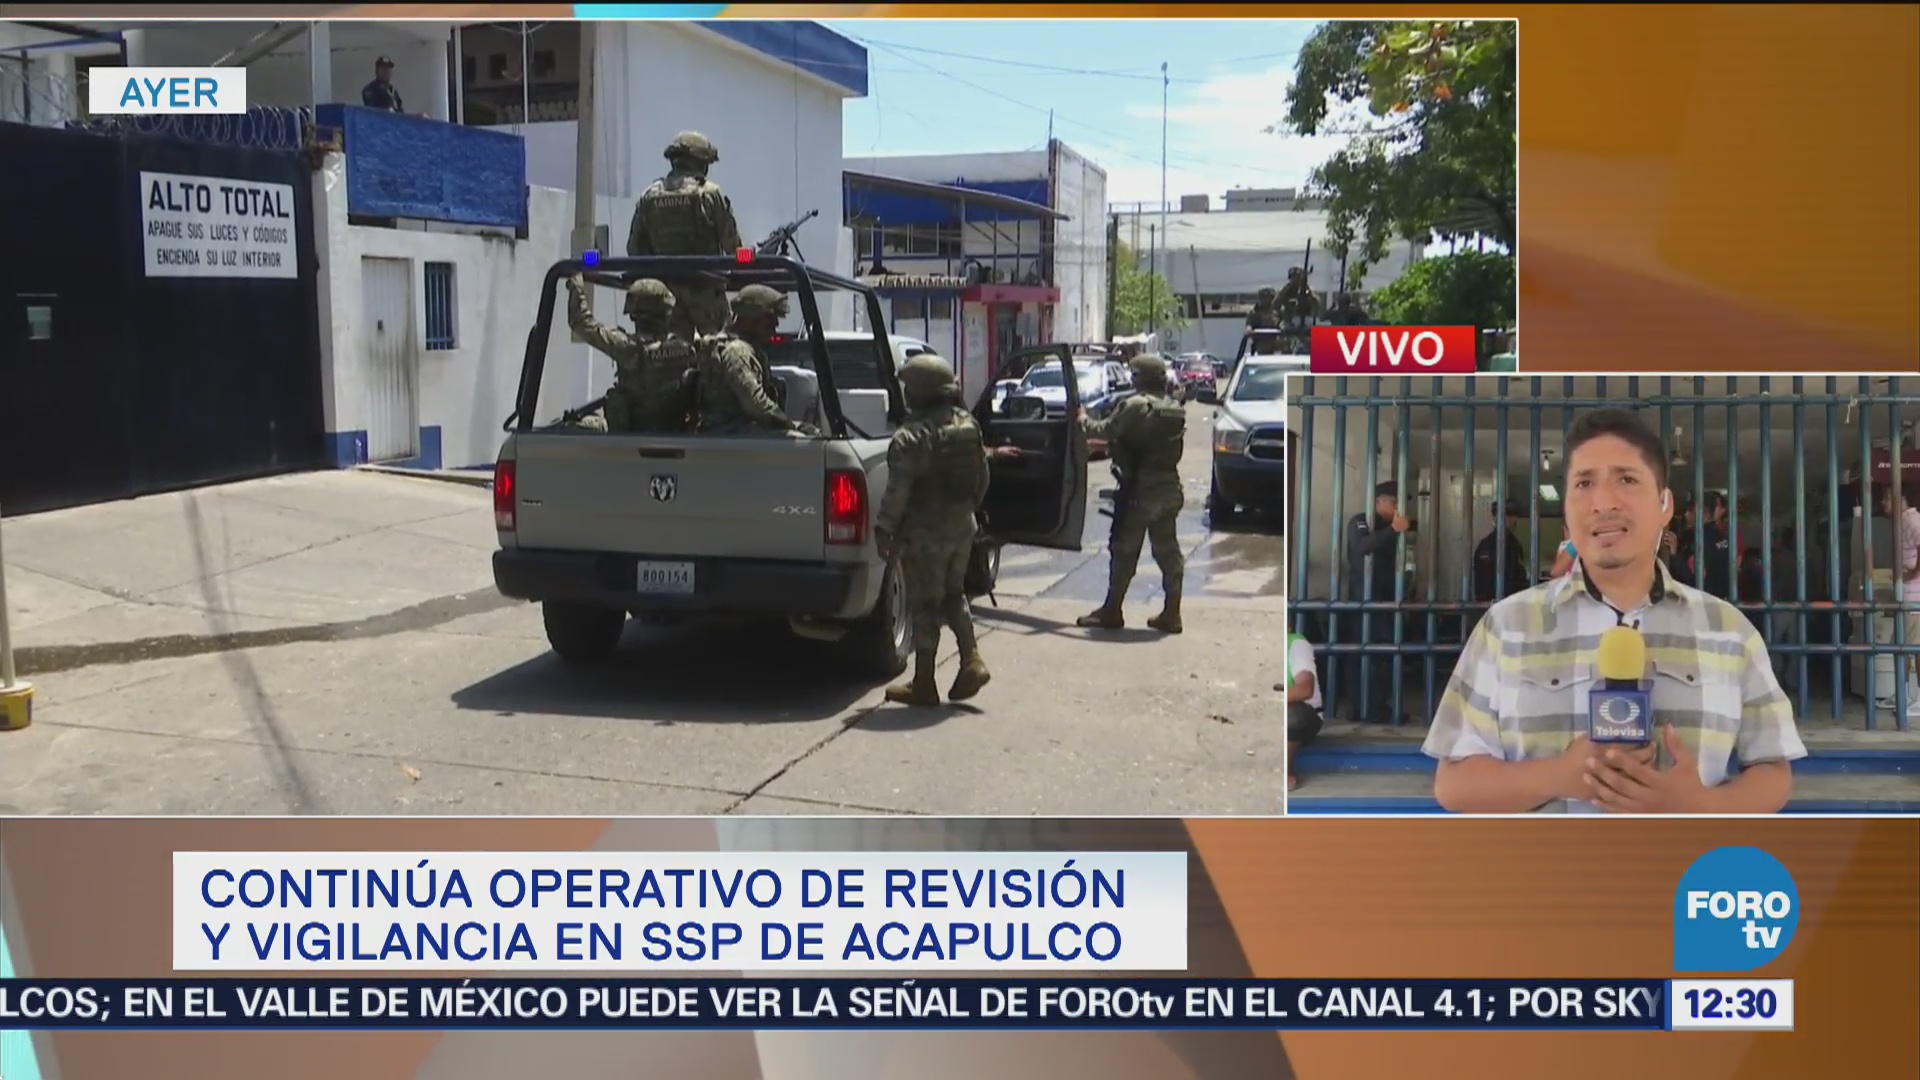 Continúa operativo de revisión y vigilancia SSP de Acapulco